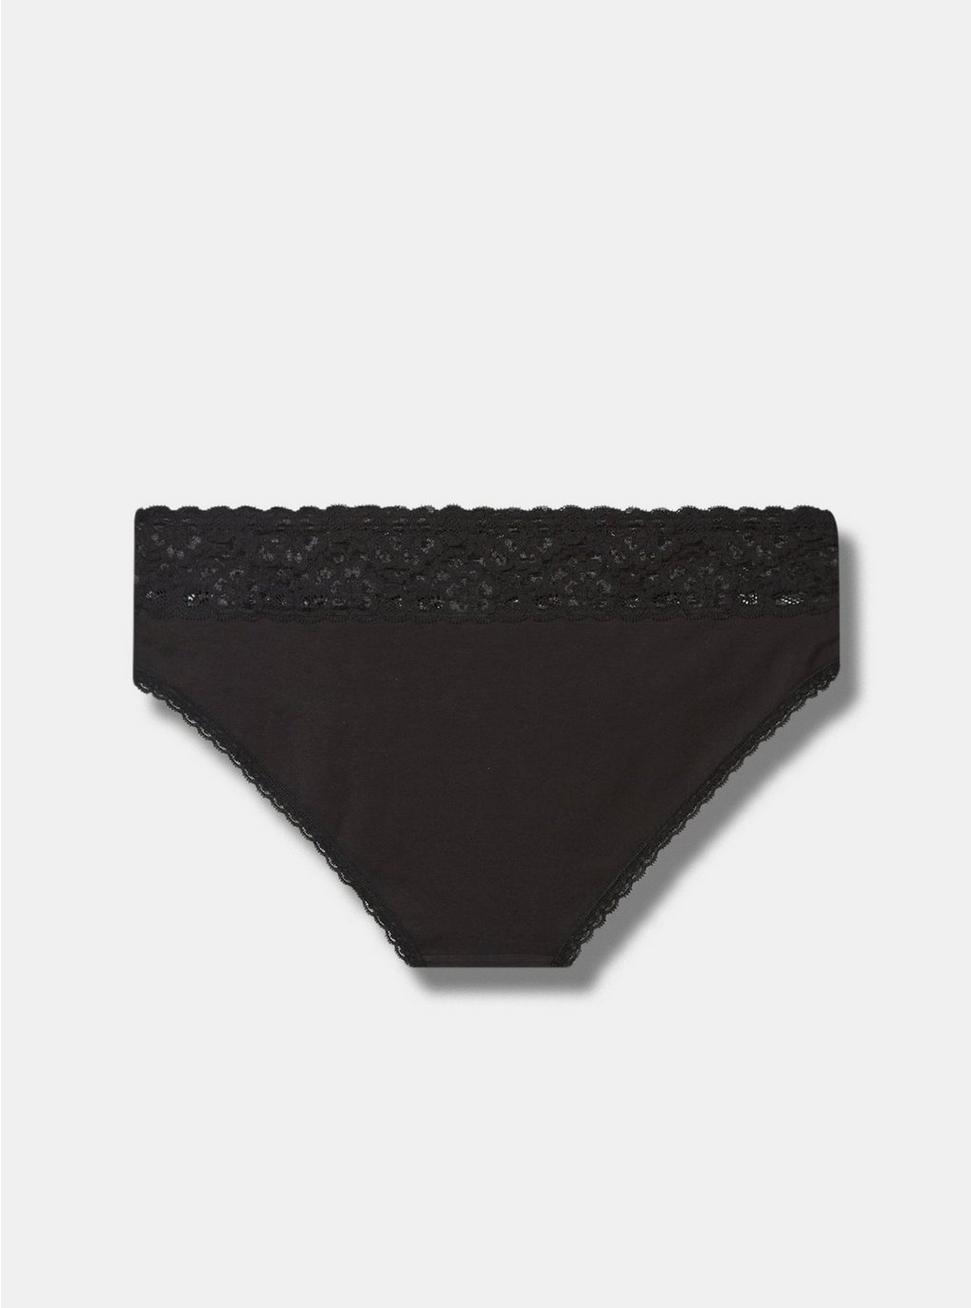 Cotton Mid-Rise Bikini Lace Trim Panty, RICH BLACK, alternate